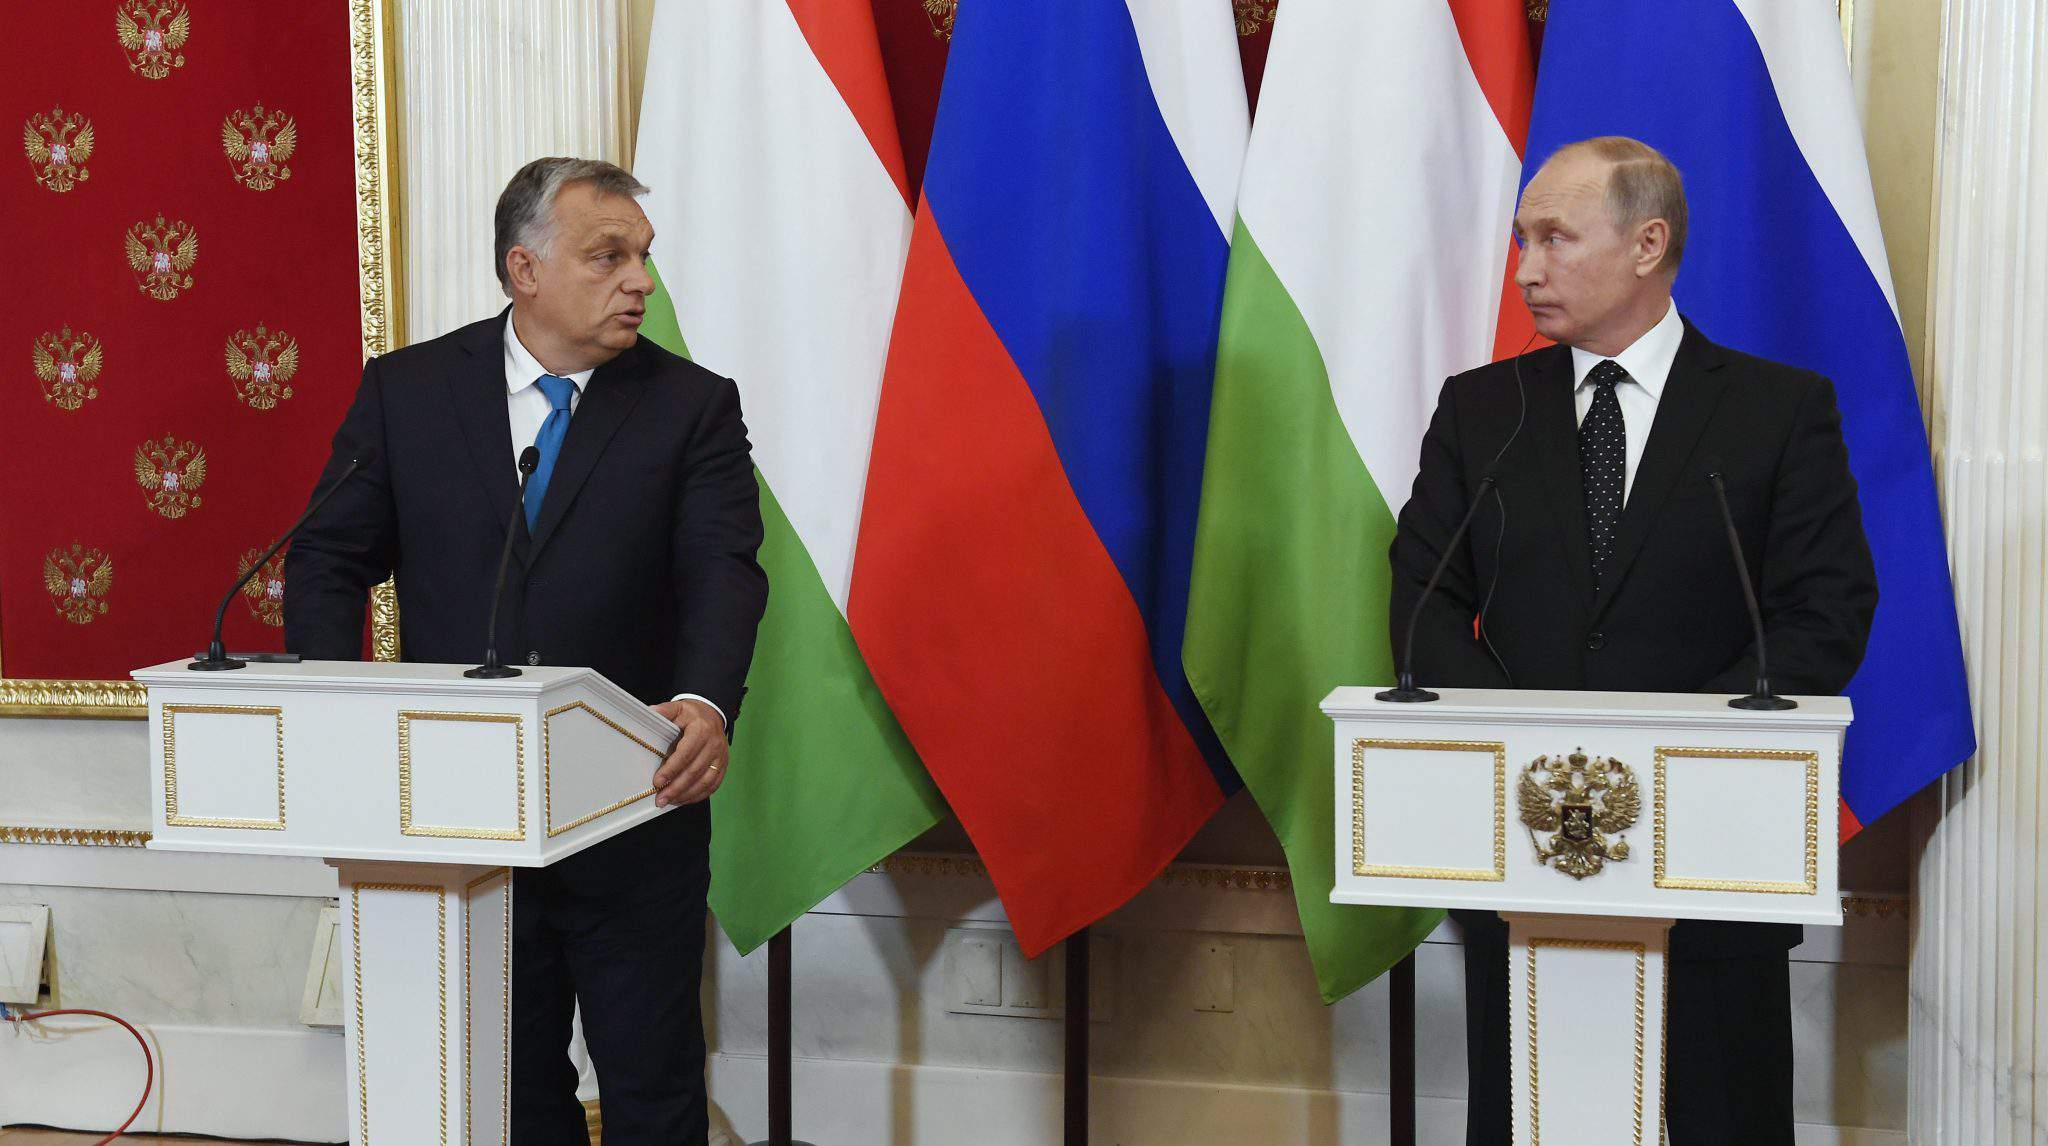 Orbán în Rusia cu Putin